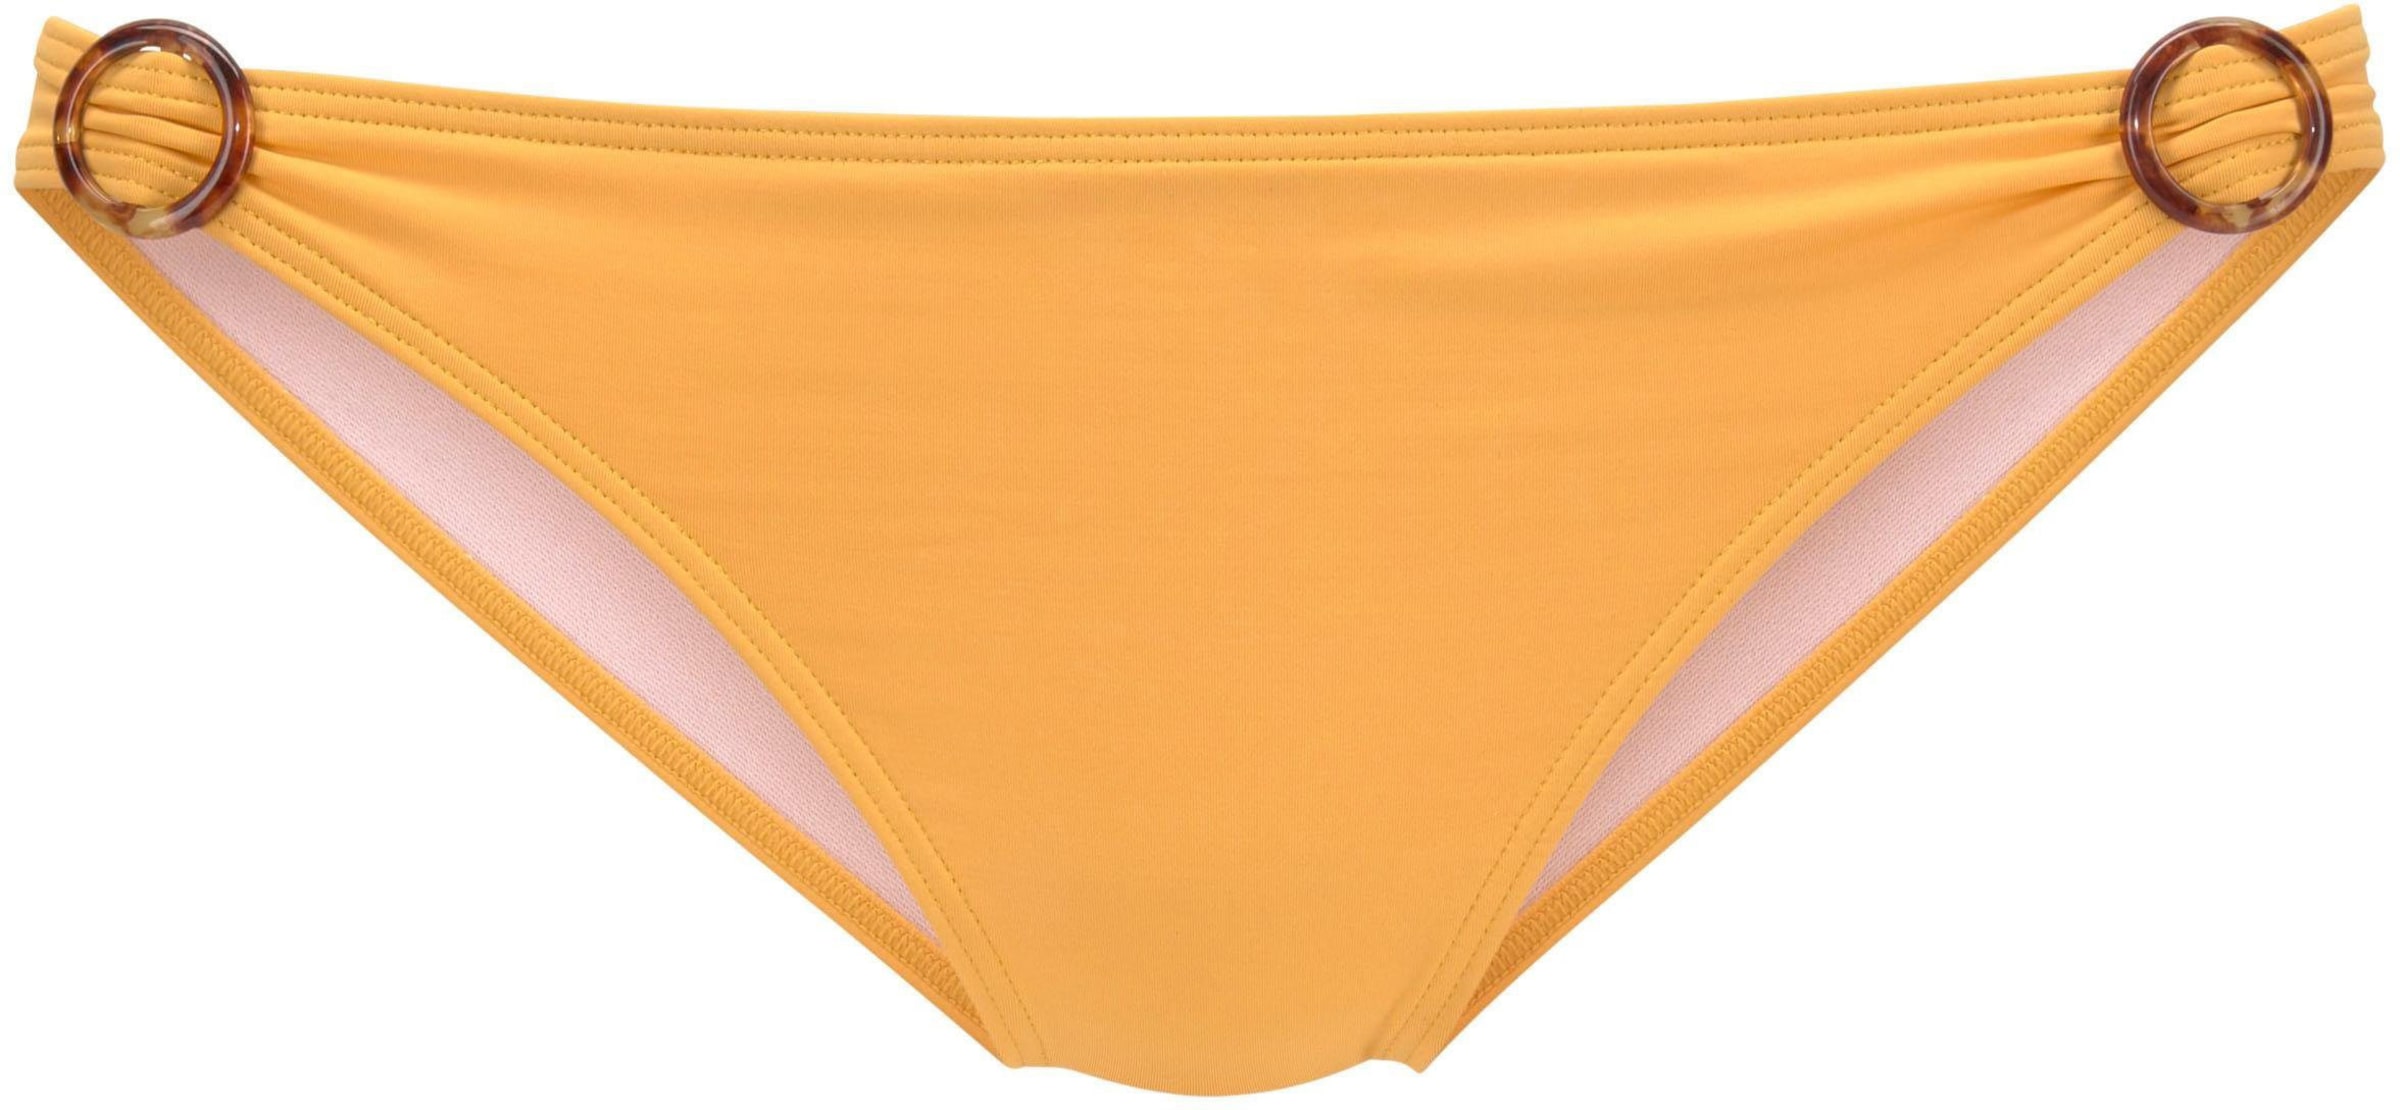 Ringe Der günstig Kaufen-Bikini-Hose in gelb von s.Oliver. Bikini-Hose in gelb von s.Oliver <![CDATA[Bikini-Hose von S.Oliver Beachwear. Mit 2 seitlichen Zierringen. Zierringe in Horn-Optik in einer wunderbaren Microfaserqualität. Obermaterial: 84% Polyamid, 16% Elasthan. Futter